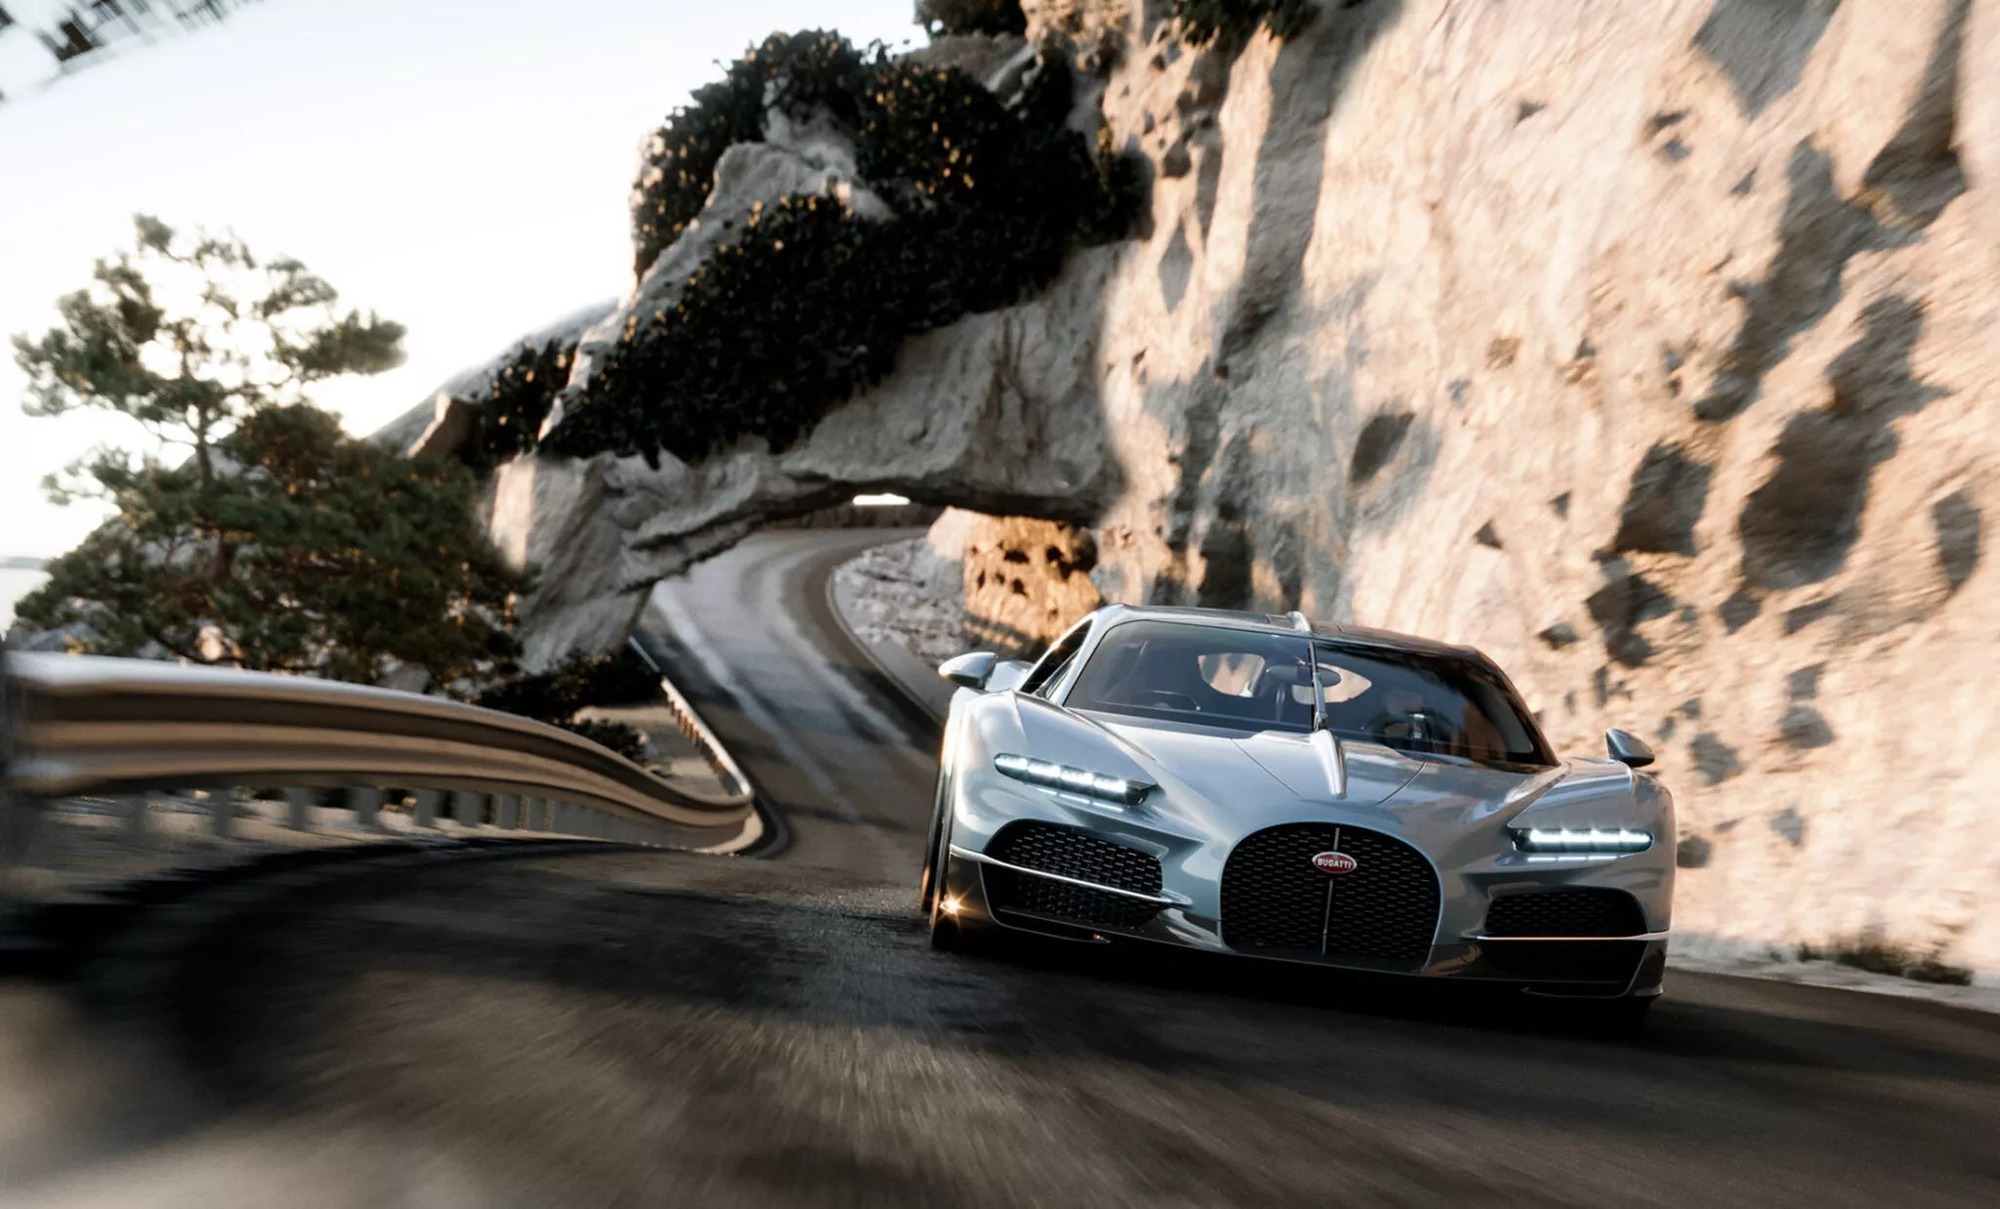 Bugatti Tourbillon Hybrid ra mắt: Mọi thông số khủng hơn Chiron, 0-100km/h chỉ trong 2 giây, tối đa 445km/h- Ảnh 9.